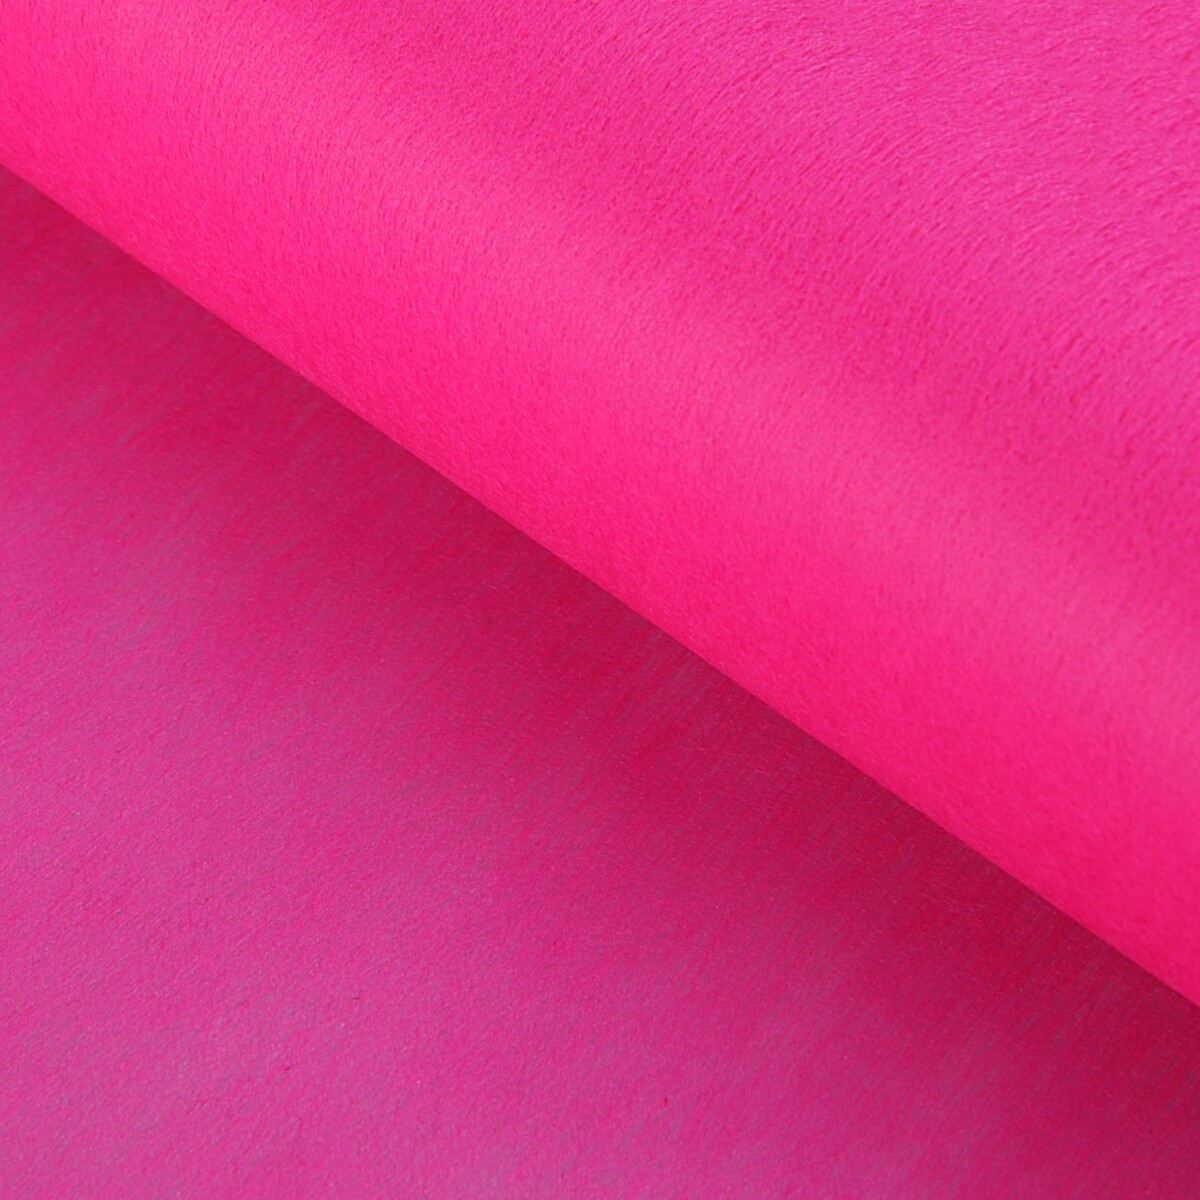 Фетр для упаковок и поделок, однотонный, ярко-розовый, однотонный, двусторонний, рулон 1шт., 50 см x 15 м фетр для упаковок и поделок однотонный светло сиреневый двусторонний рулон 1шт 50 см x 15 м